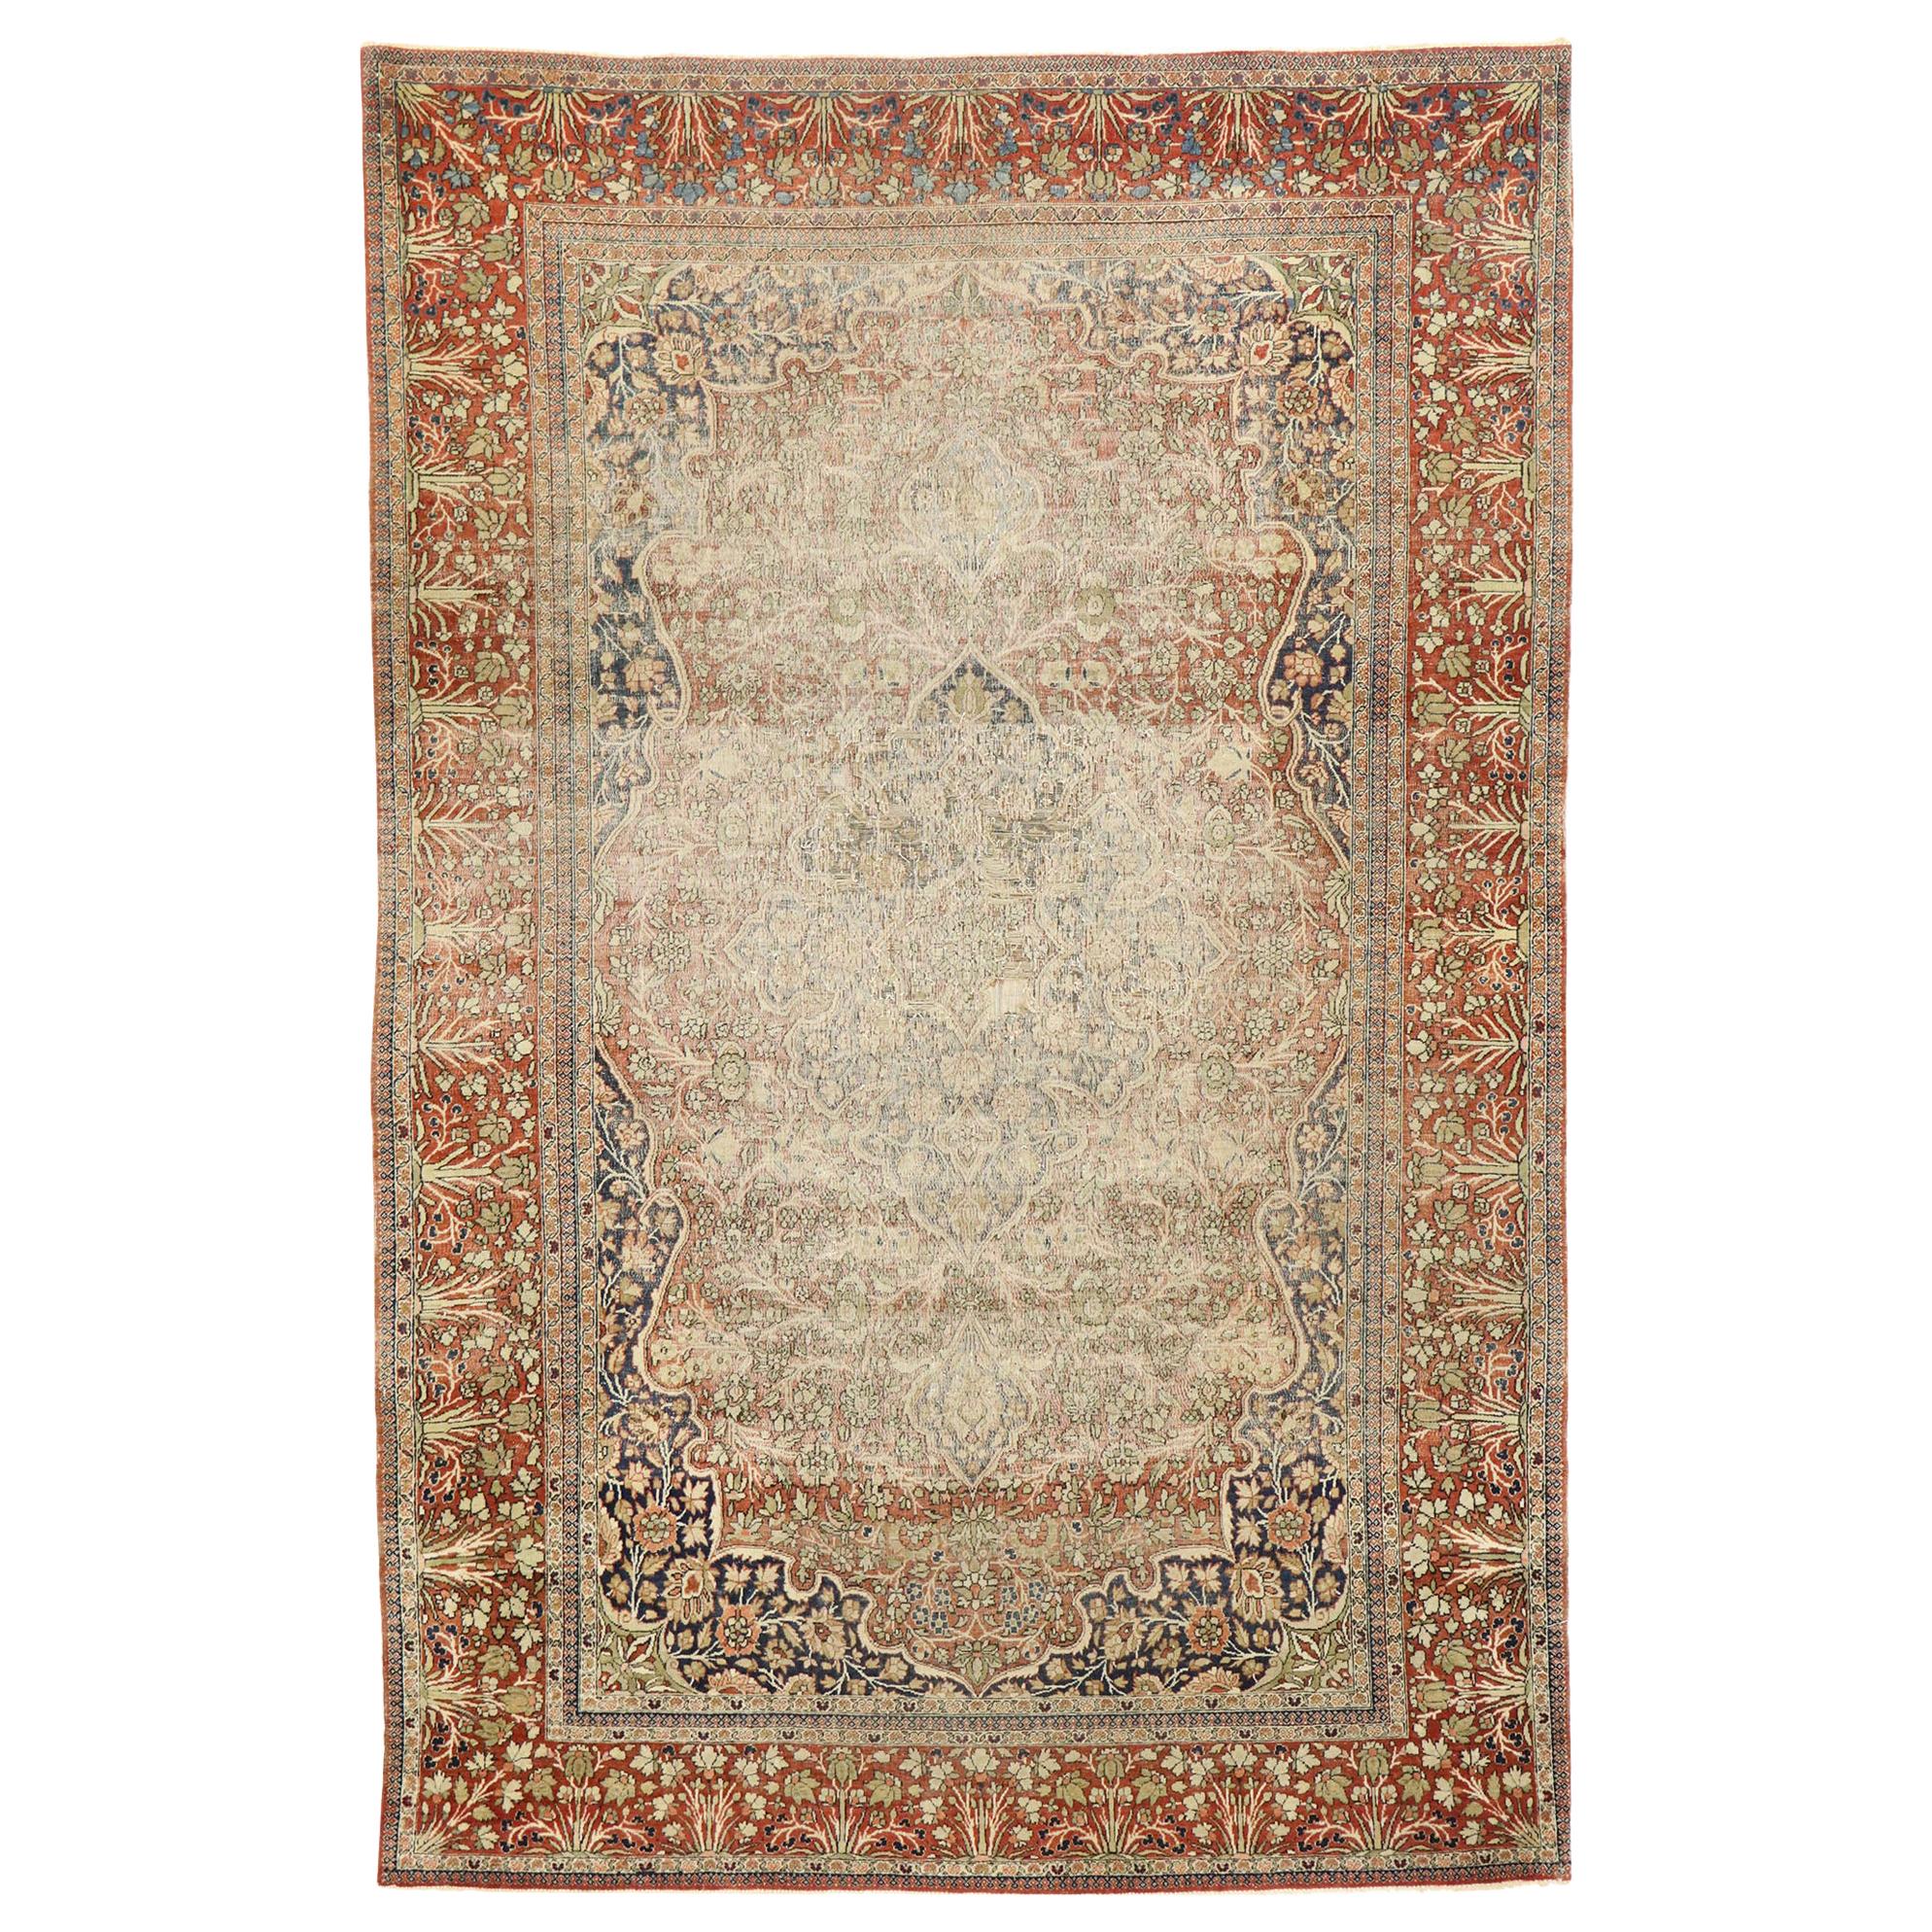 Antiker persischer Mohtesham-Kashan-Teppich im modernen:: rustikalen englischen Stil